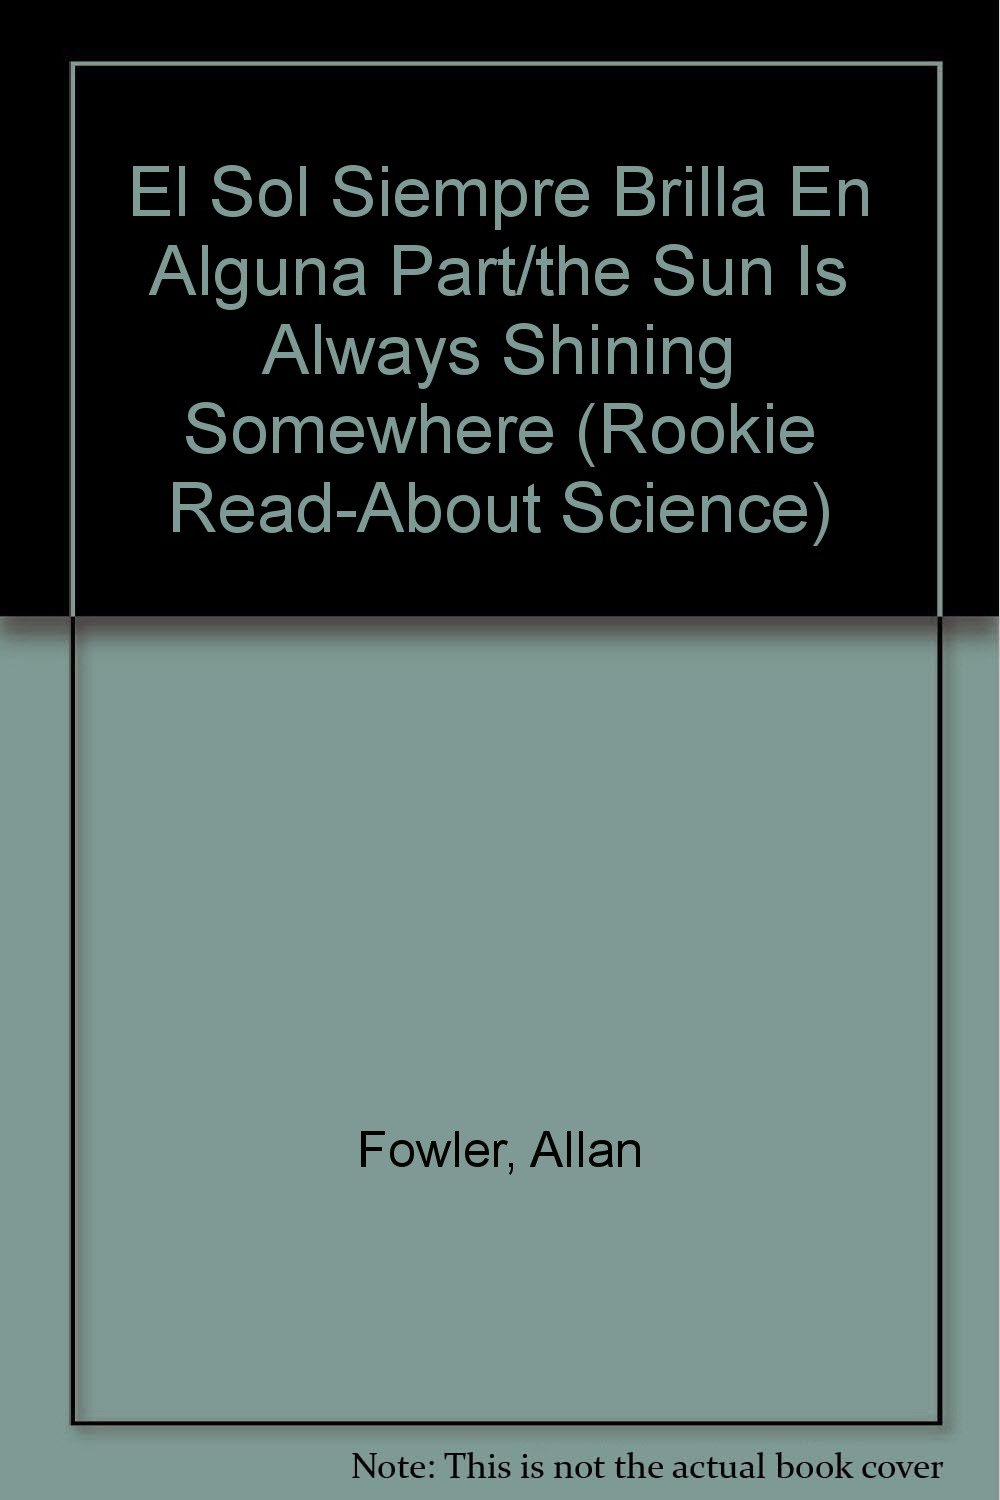 Libro: El Sol Siempre Brilla En Alguna Parte por Allan Fowler